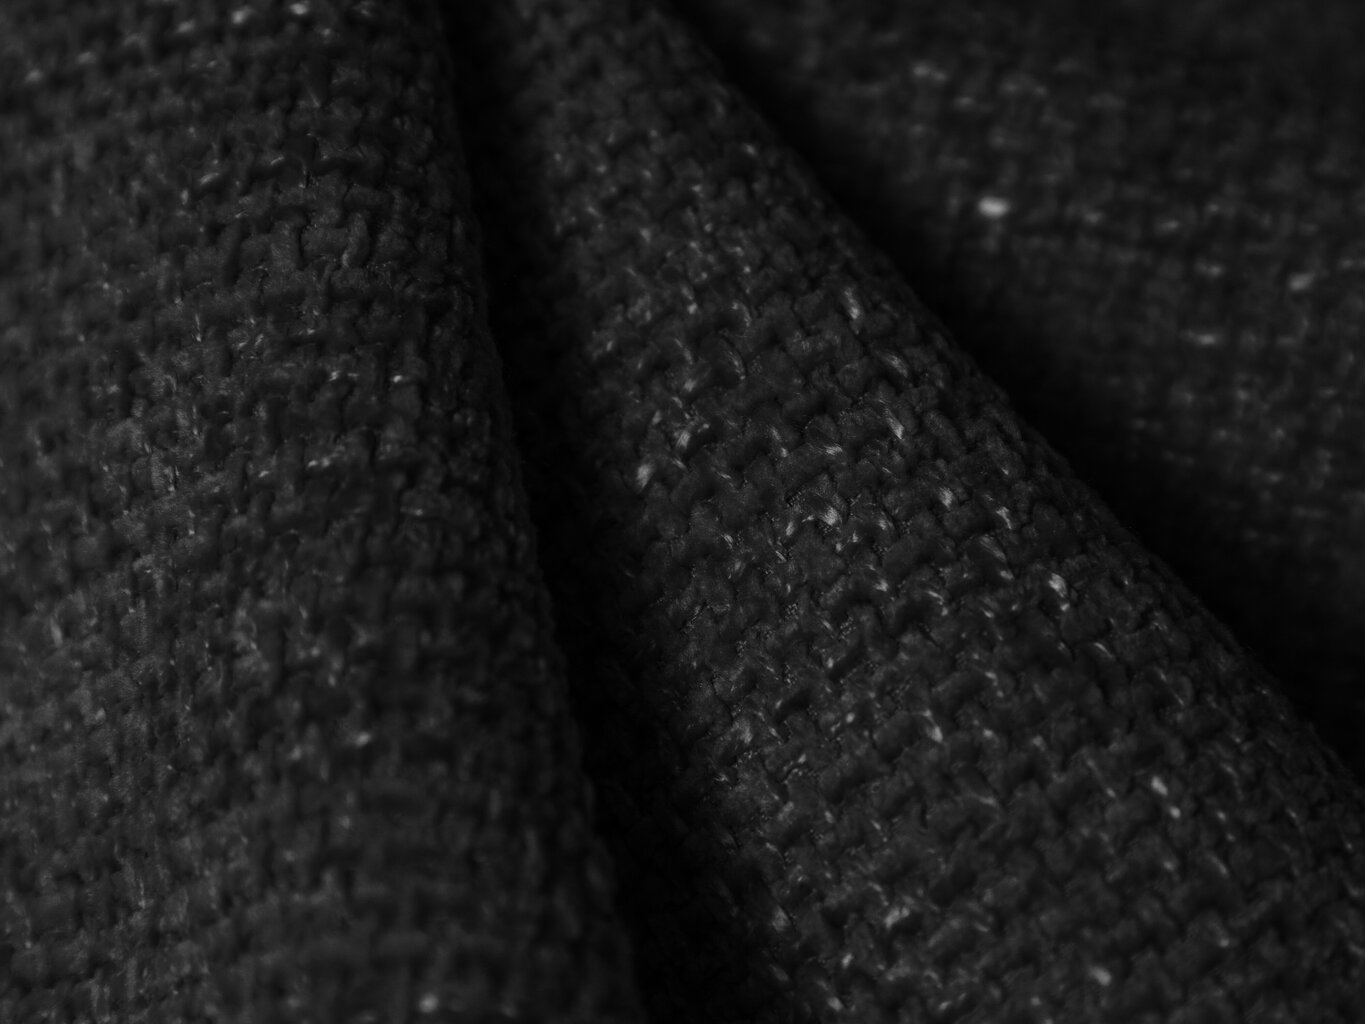 Sofa Windsor & Co Lola, juoda kaina ir informacija | Sofos | pigu.lt